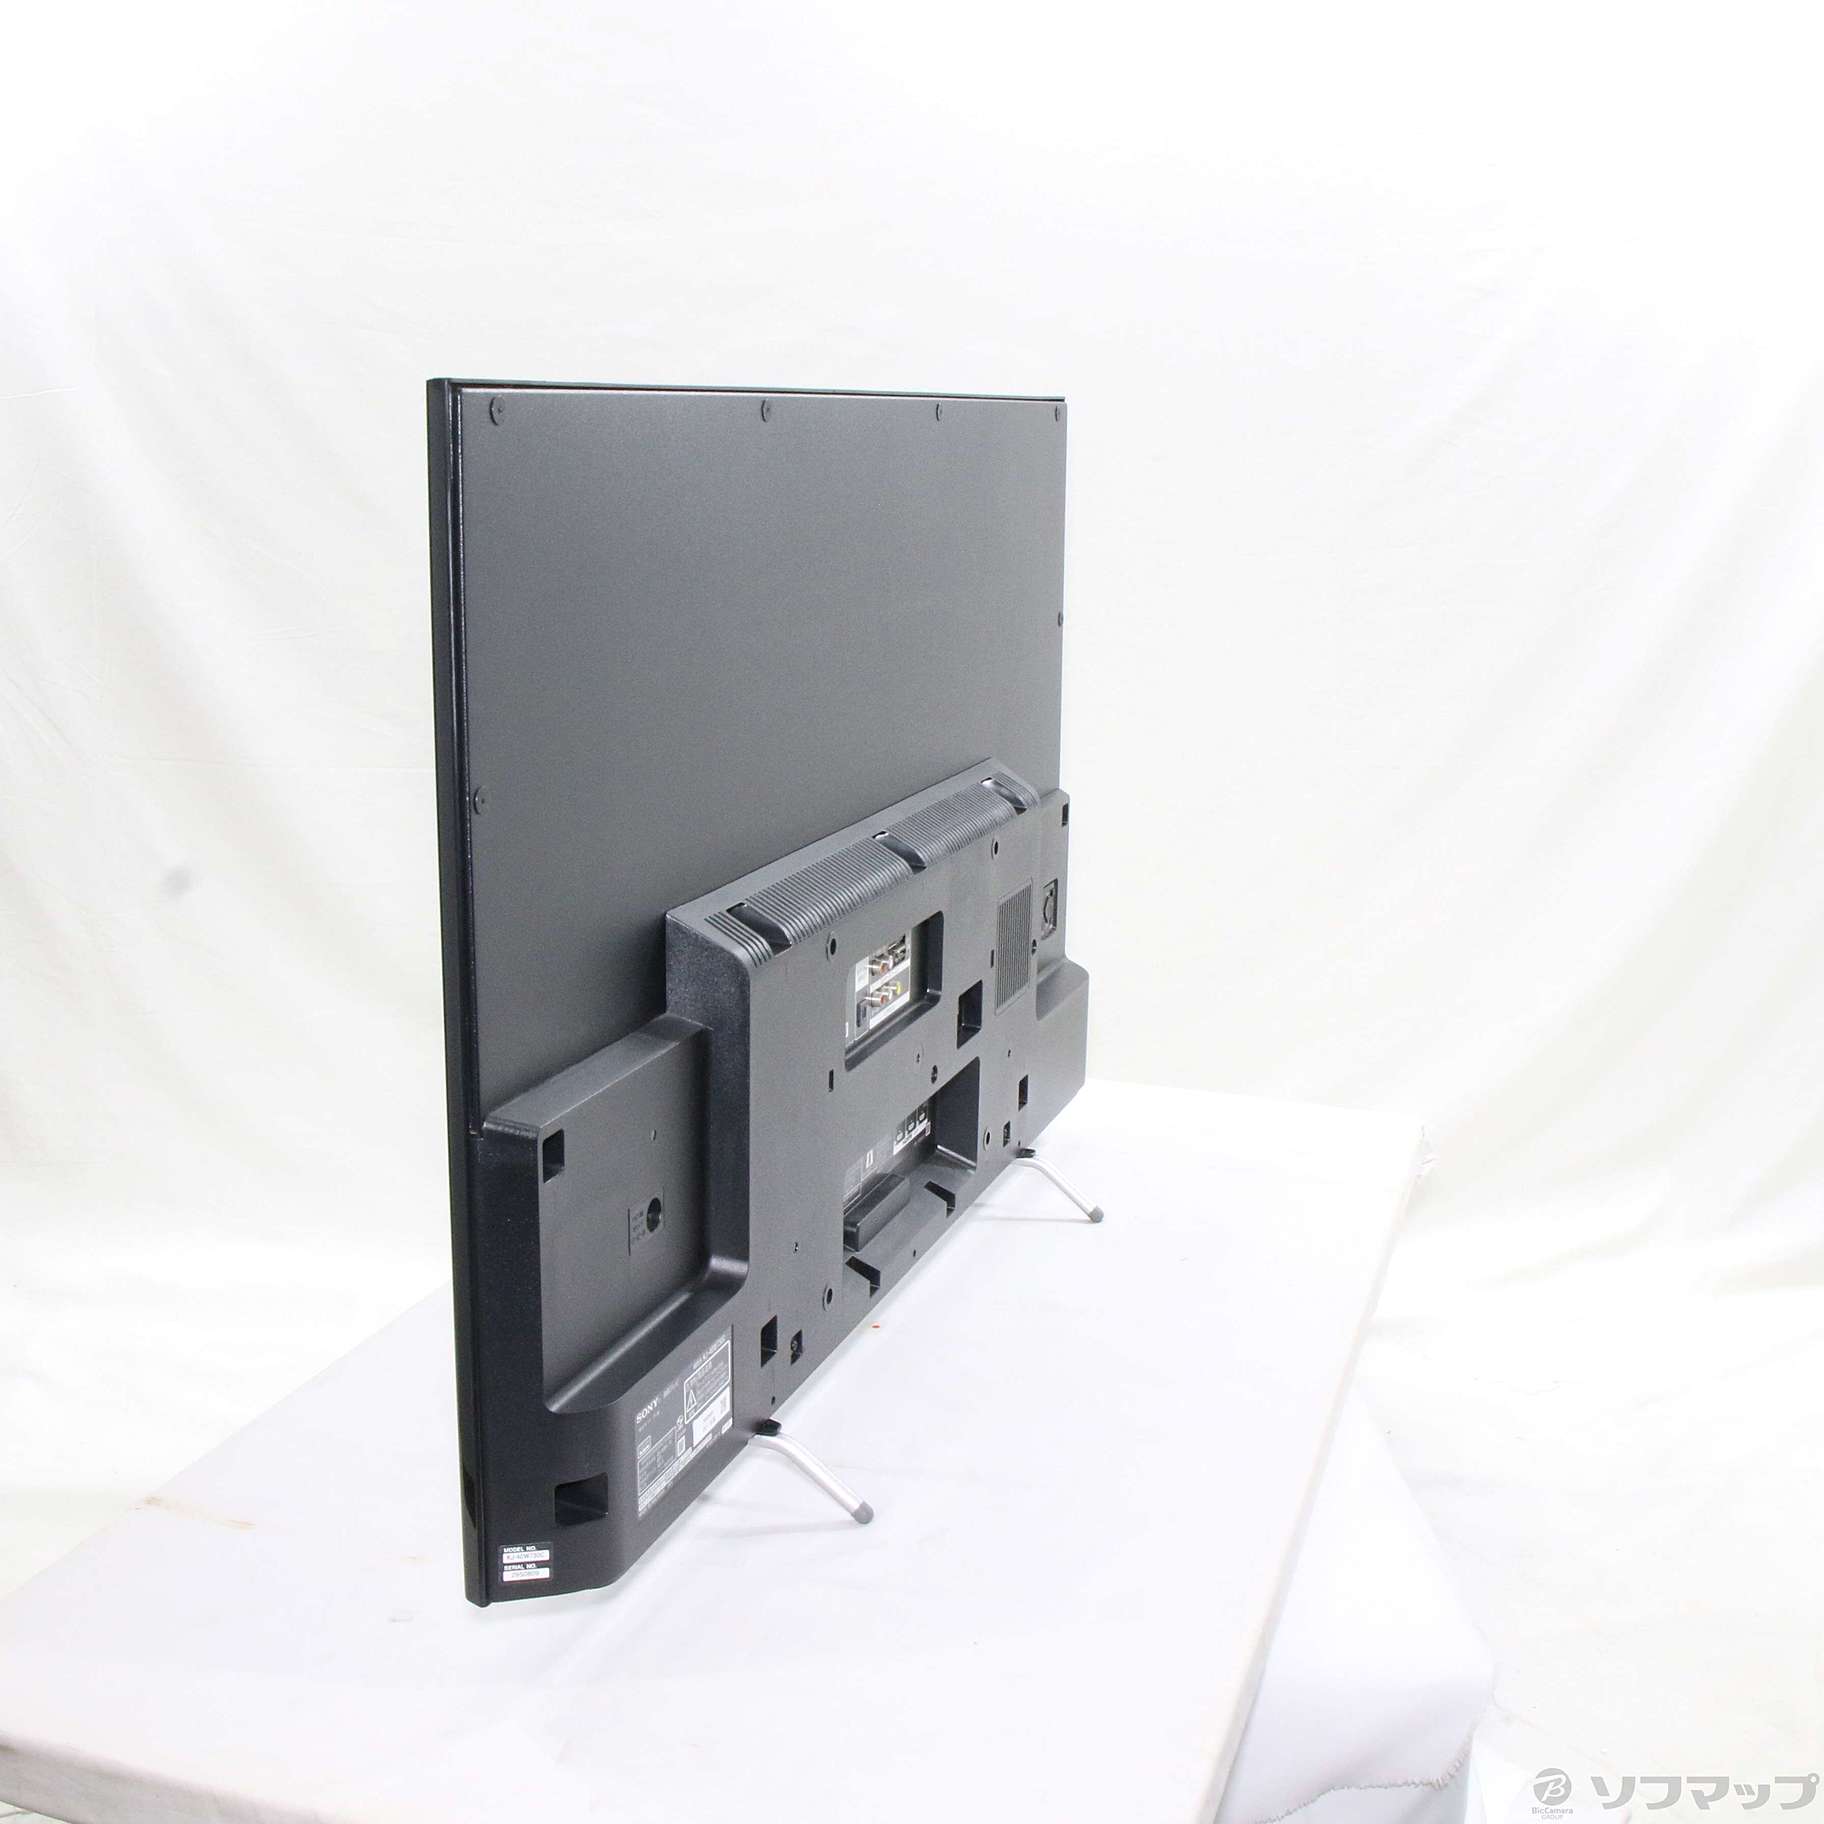 2016年製ソニー 40V型 液晶 テレビ ブラビア KJ-40W730C フルハイビジョン